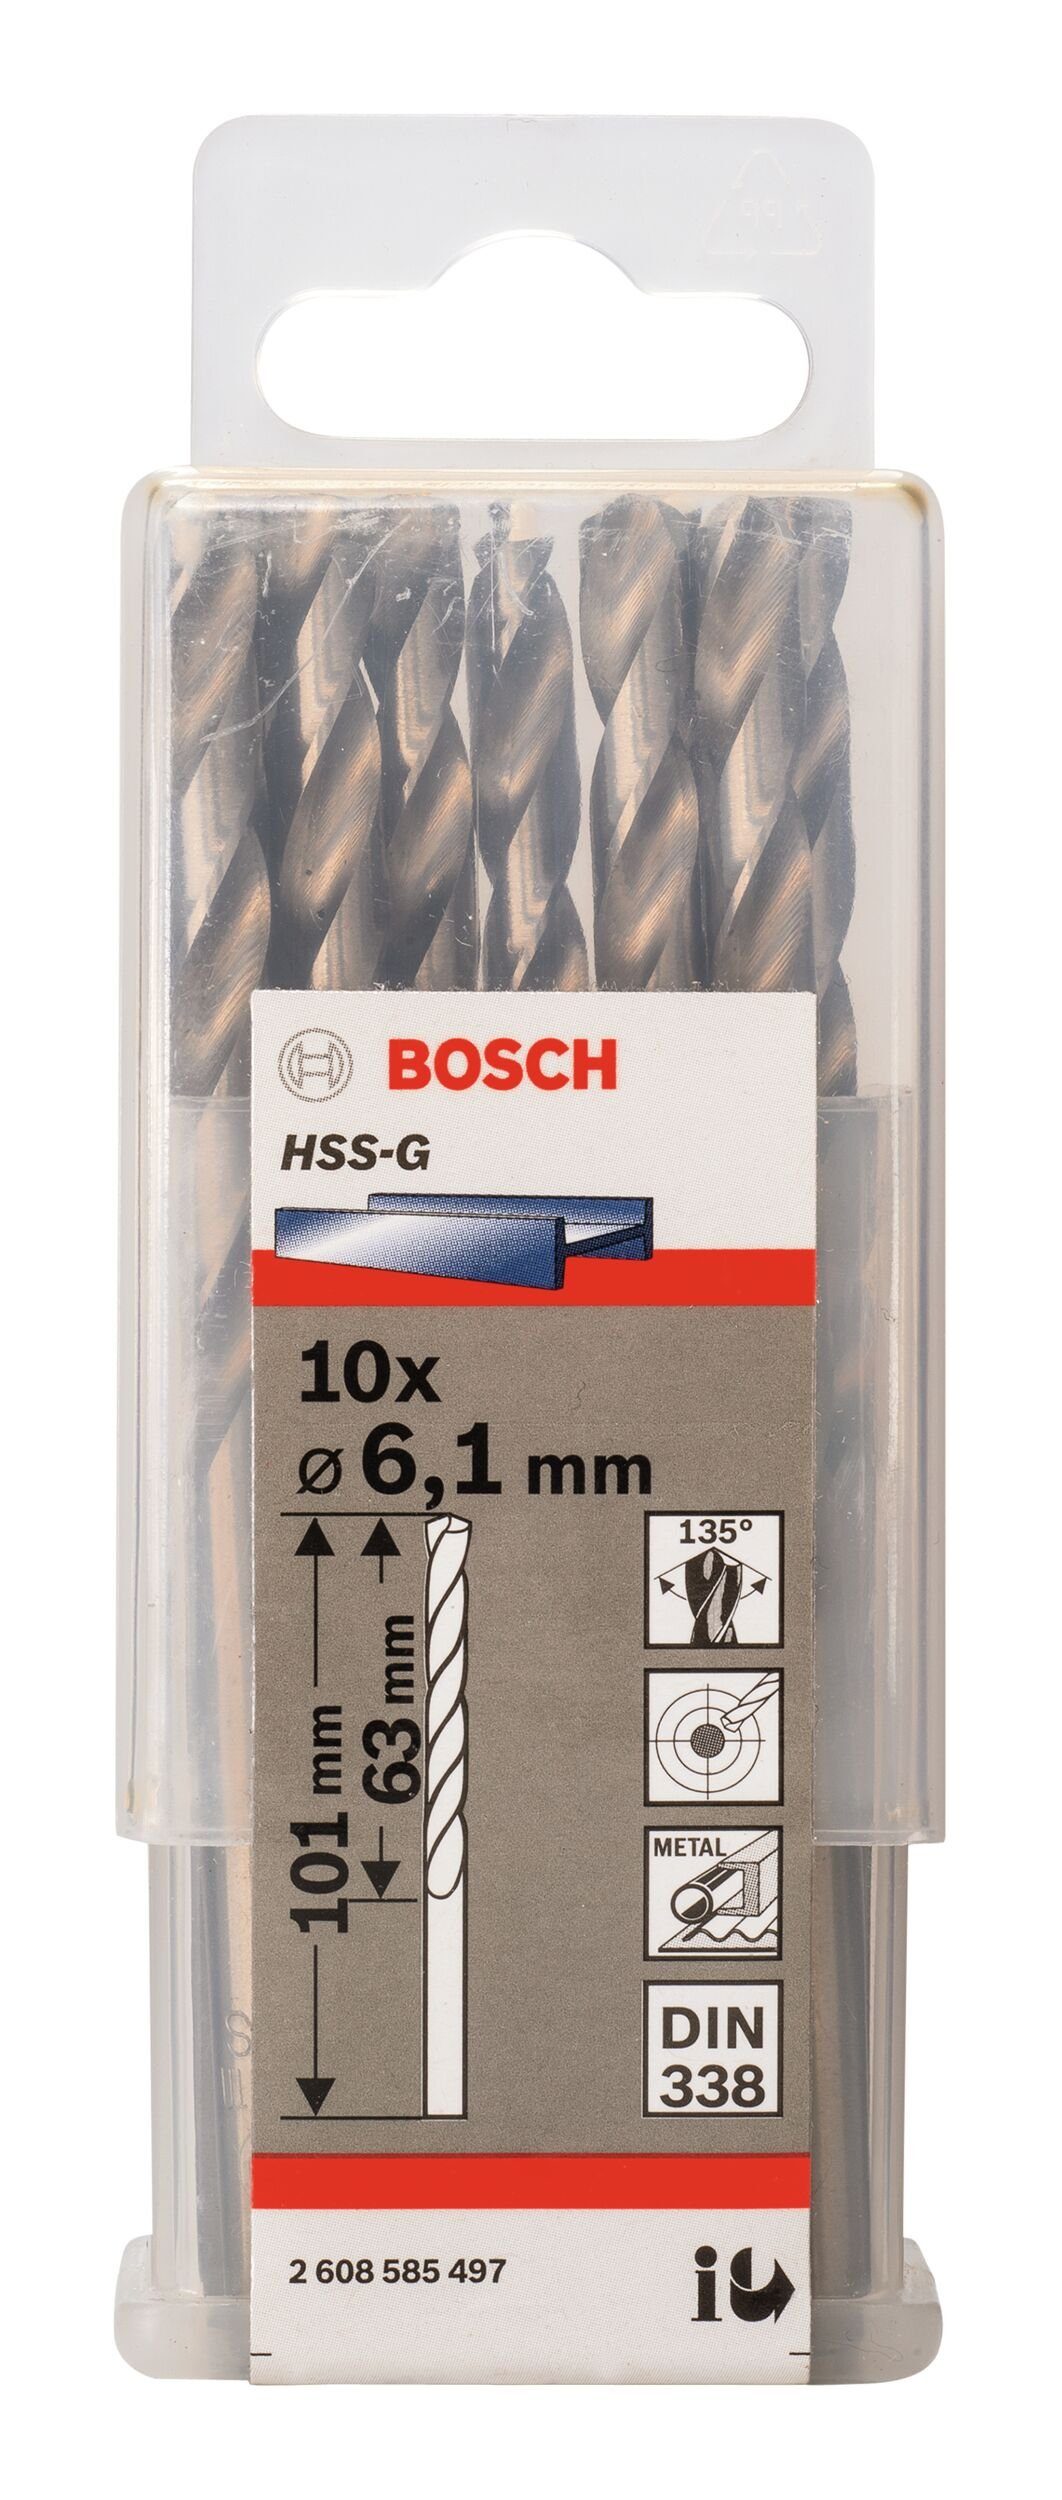 x 338) (DIN 6,1 - 101 Metallbohrer, 10er-Pack mm HSS-G - (10 x 63 Stück), BOSCH